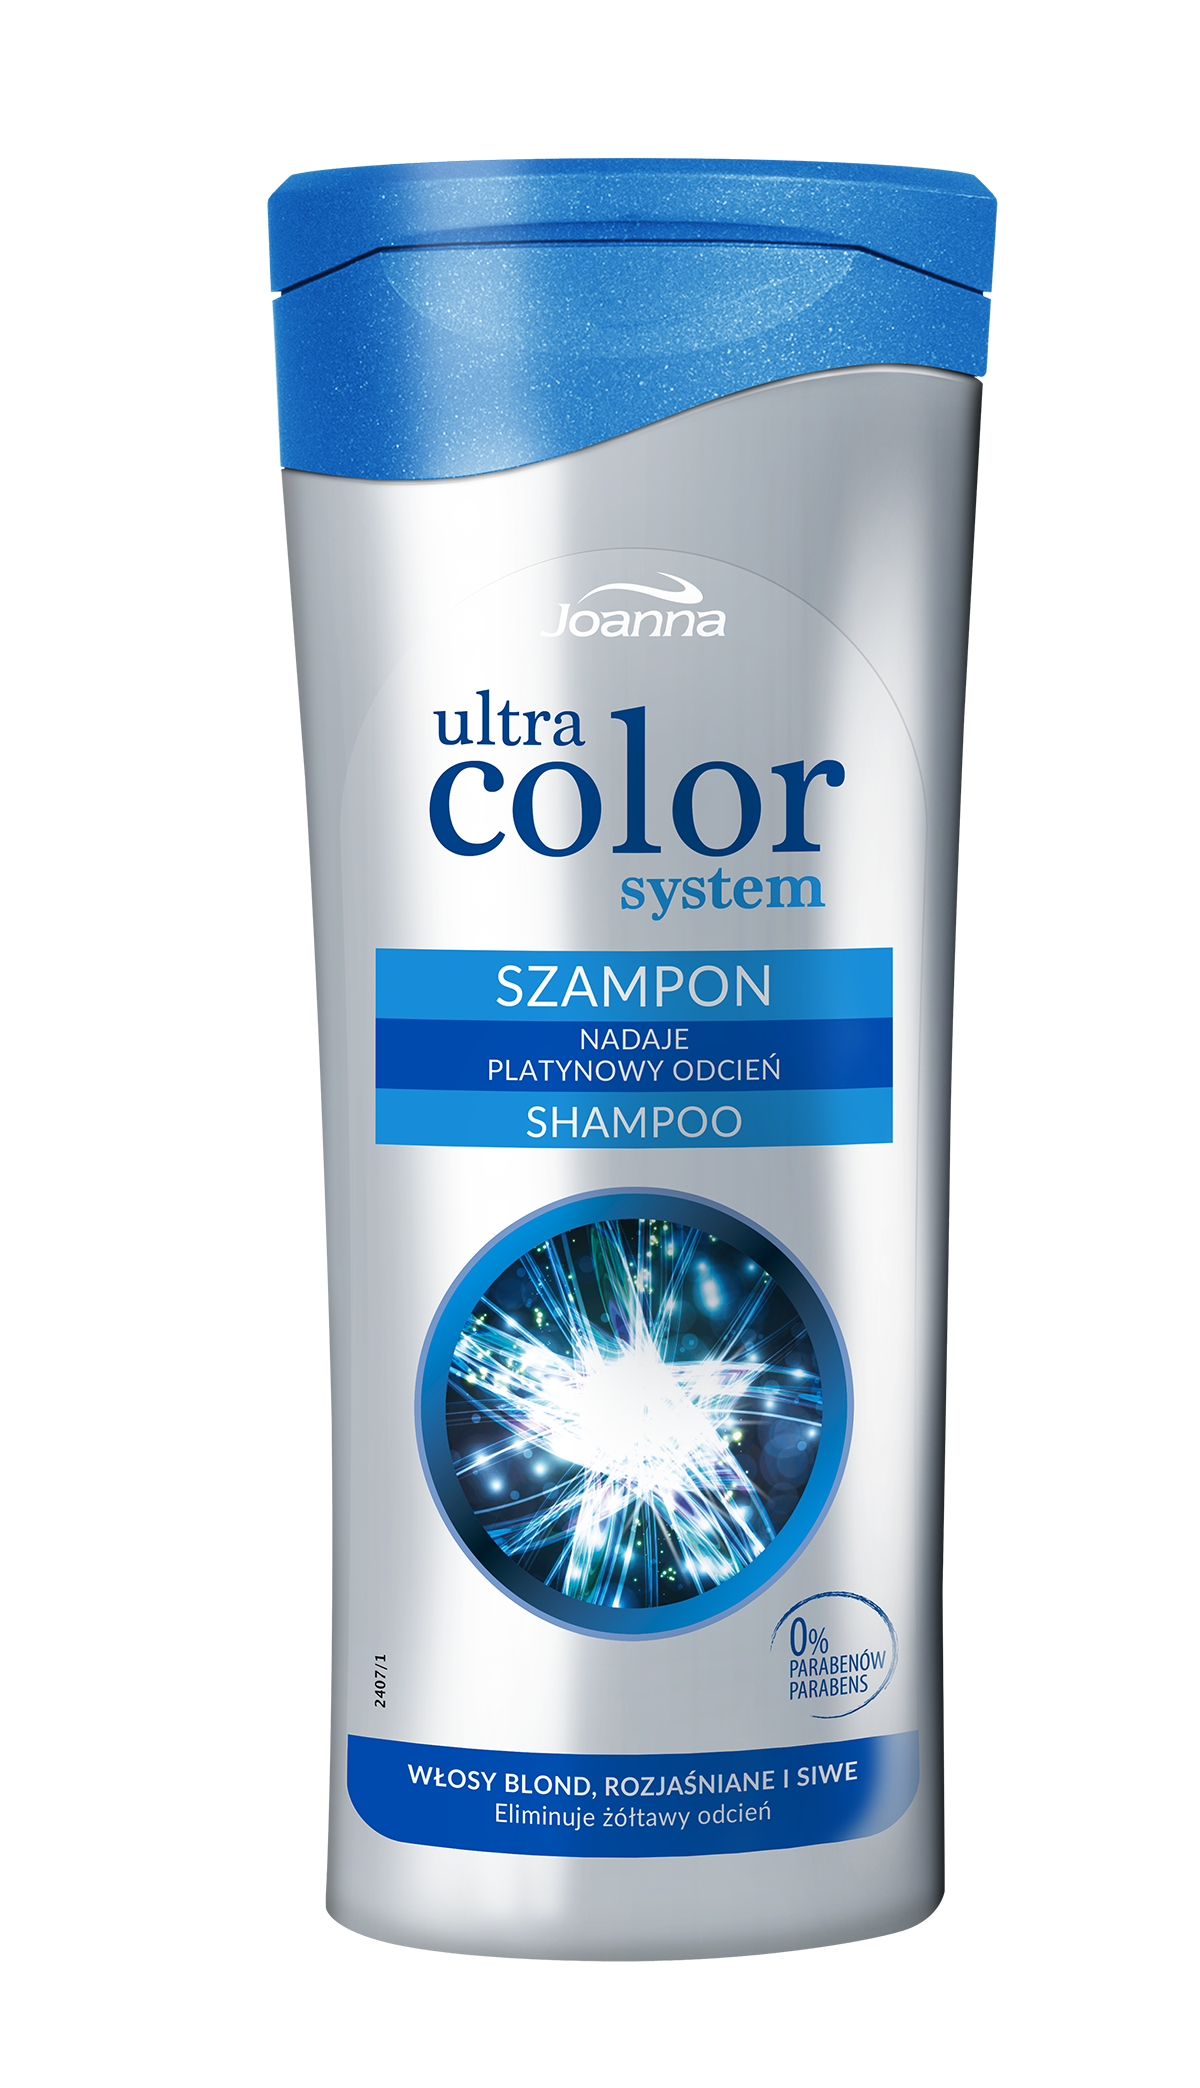 szampon dla wlosowblond